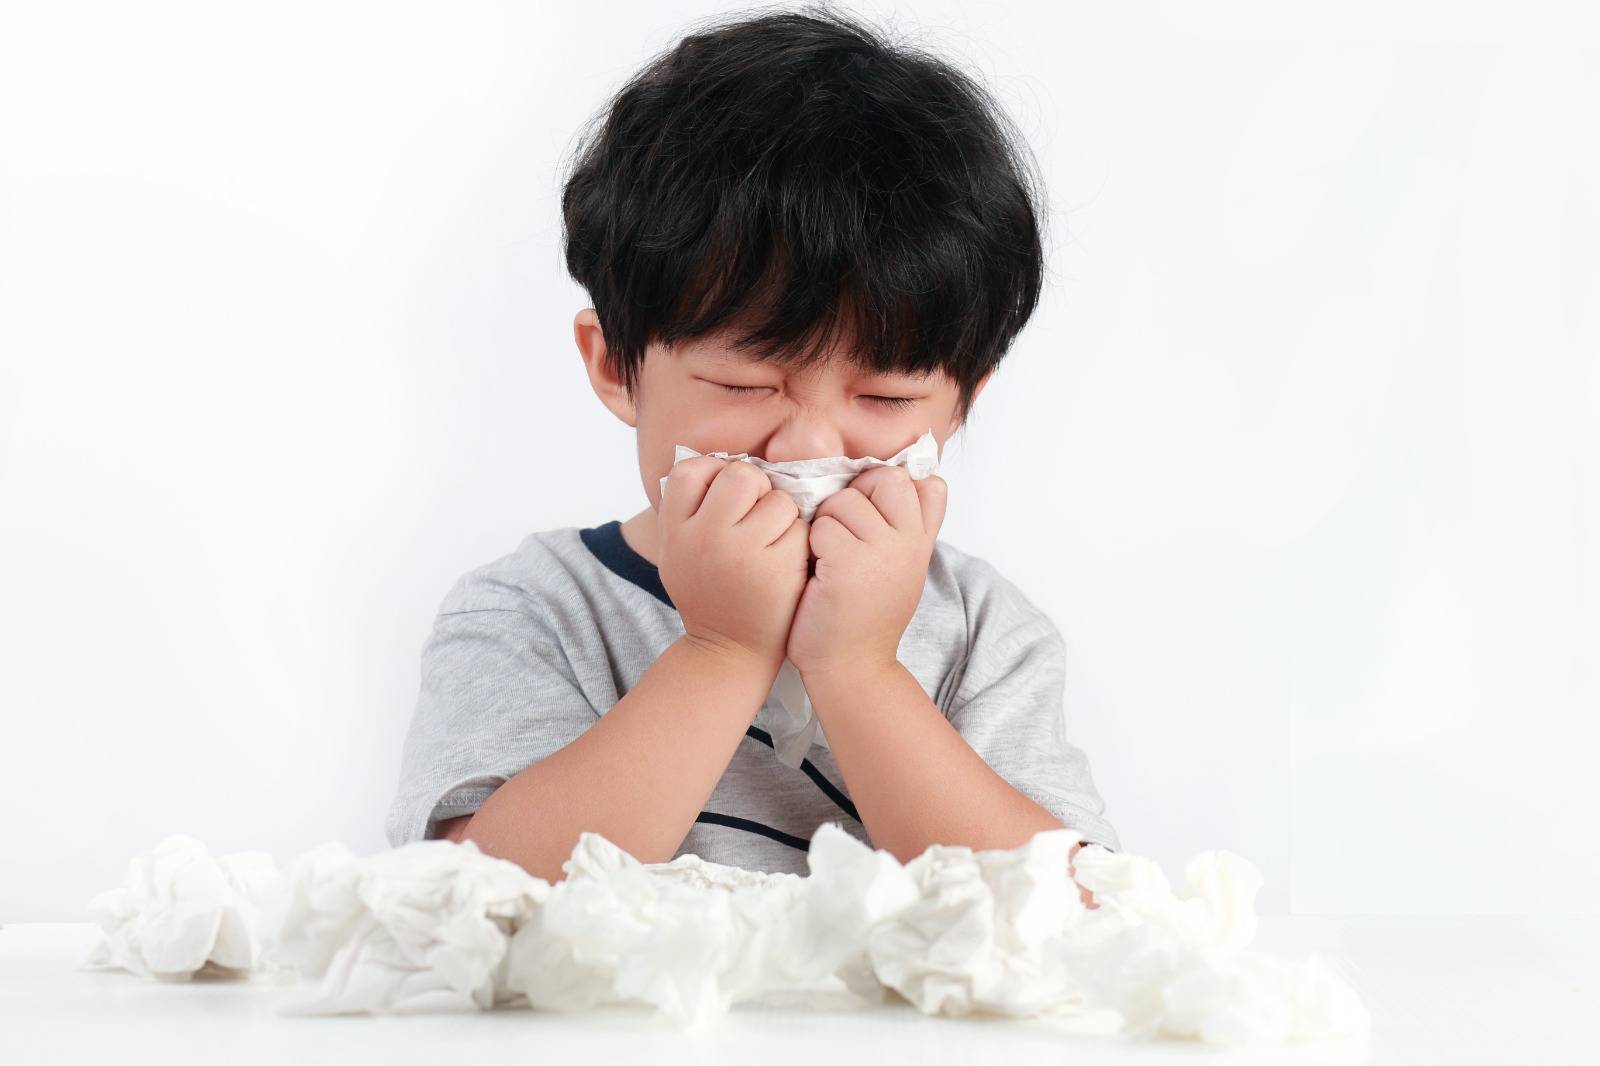 非創傷性鼻骨移位 小朋友鼻敏感經常捽鼻要留意愈來愈歪